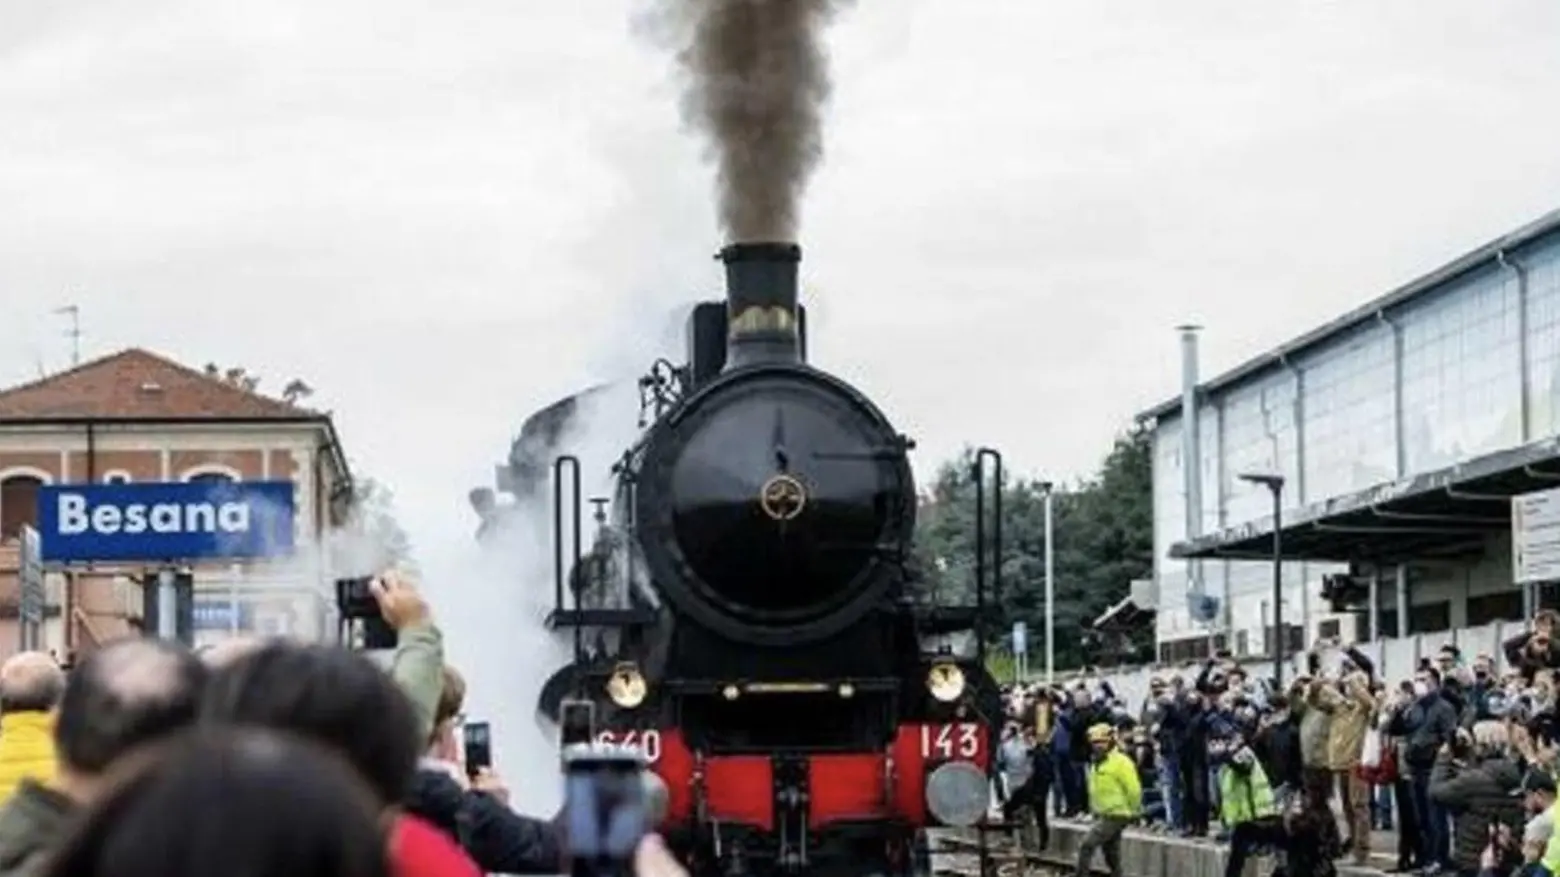 Ritornano i “trenini storici”:  il Besanino Express parte il 23